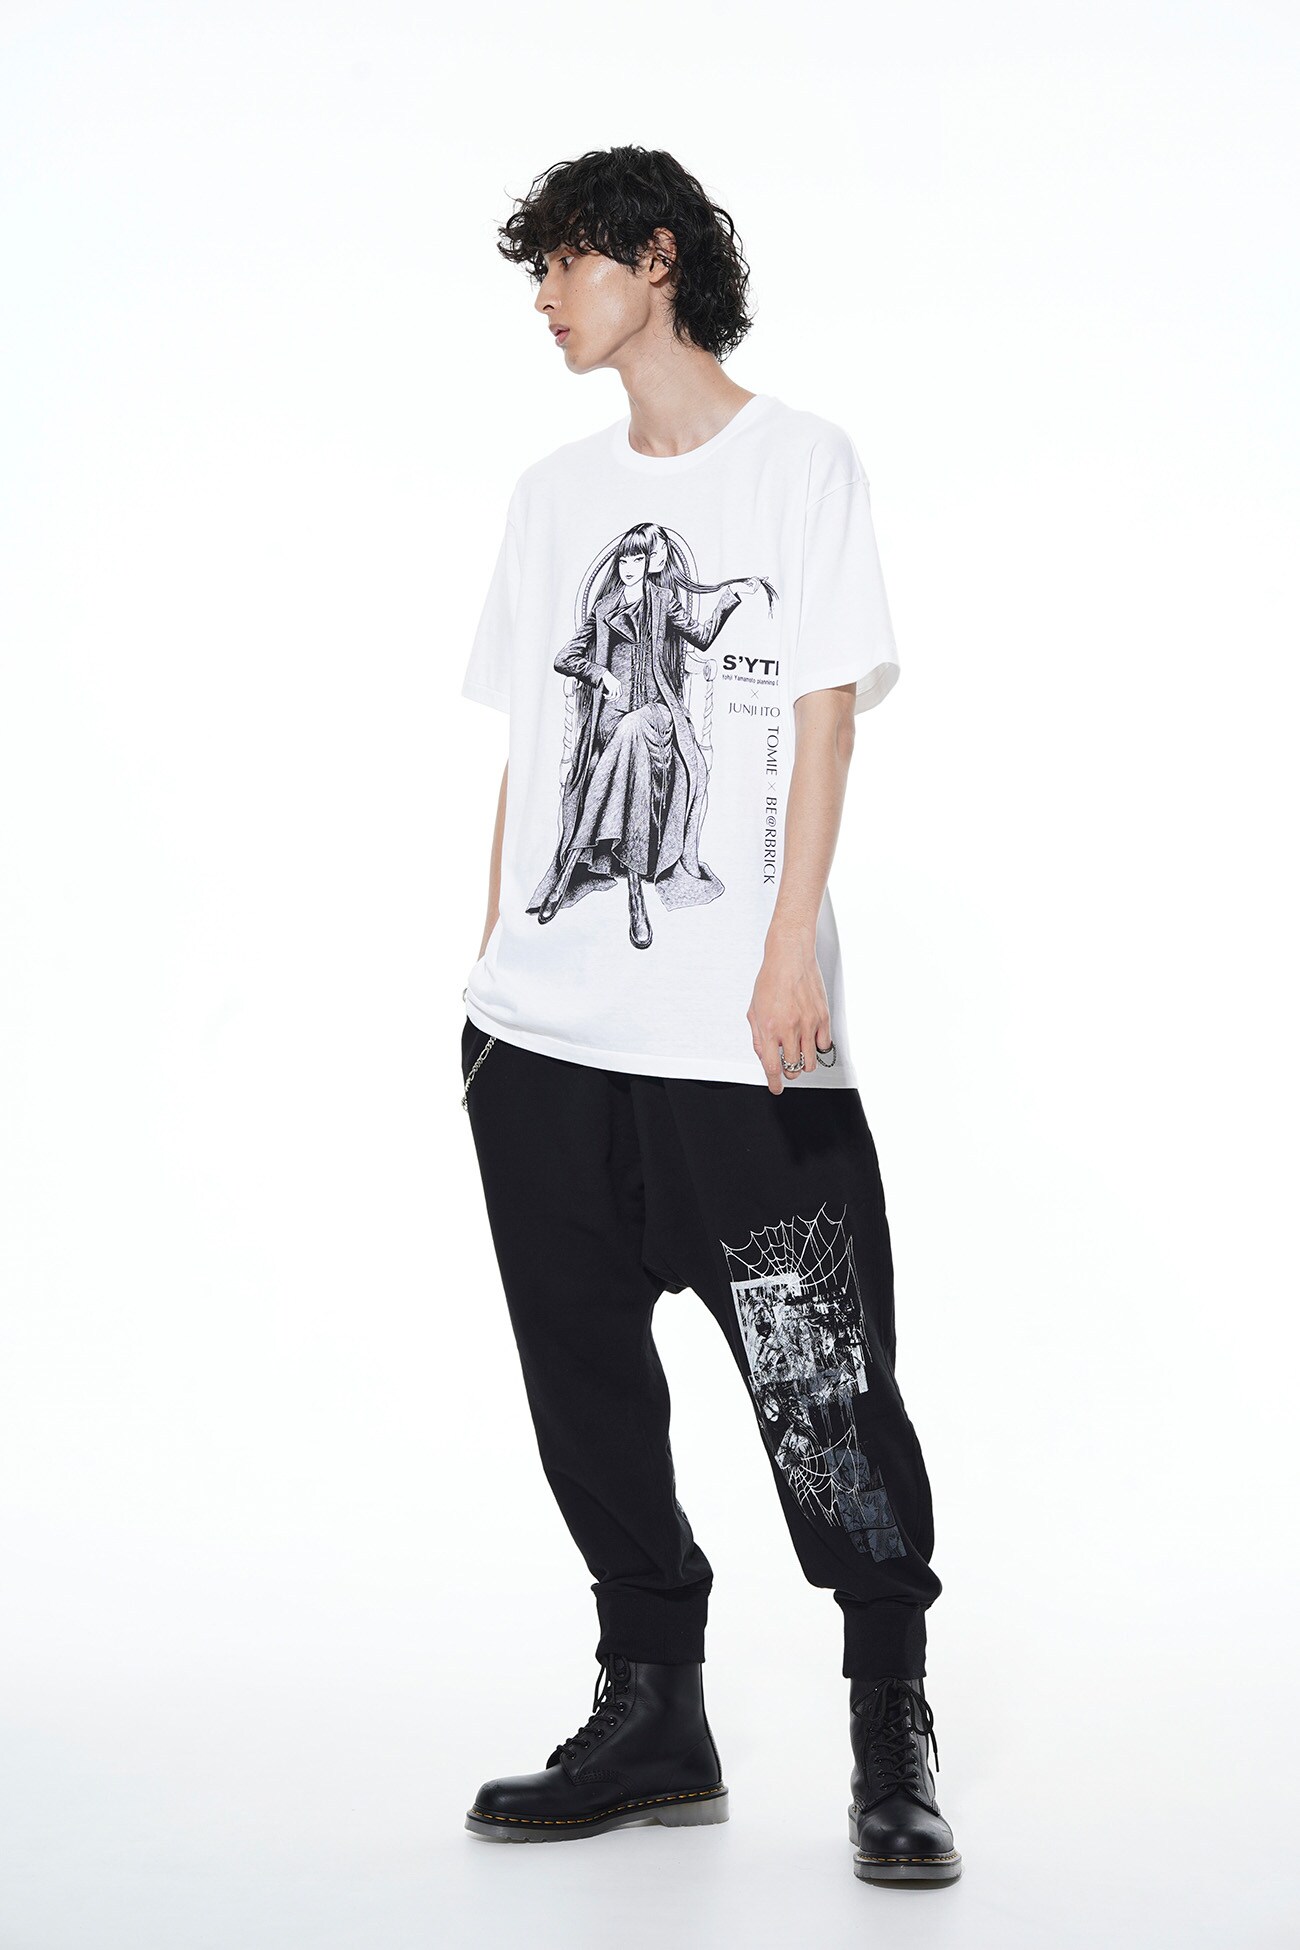 BE@RBRICK × Junji ITO "Tomie" Wearing Yohji Yamamoto Lace-up Dress T-shirt